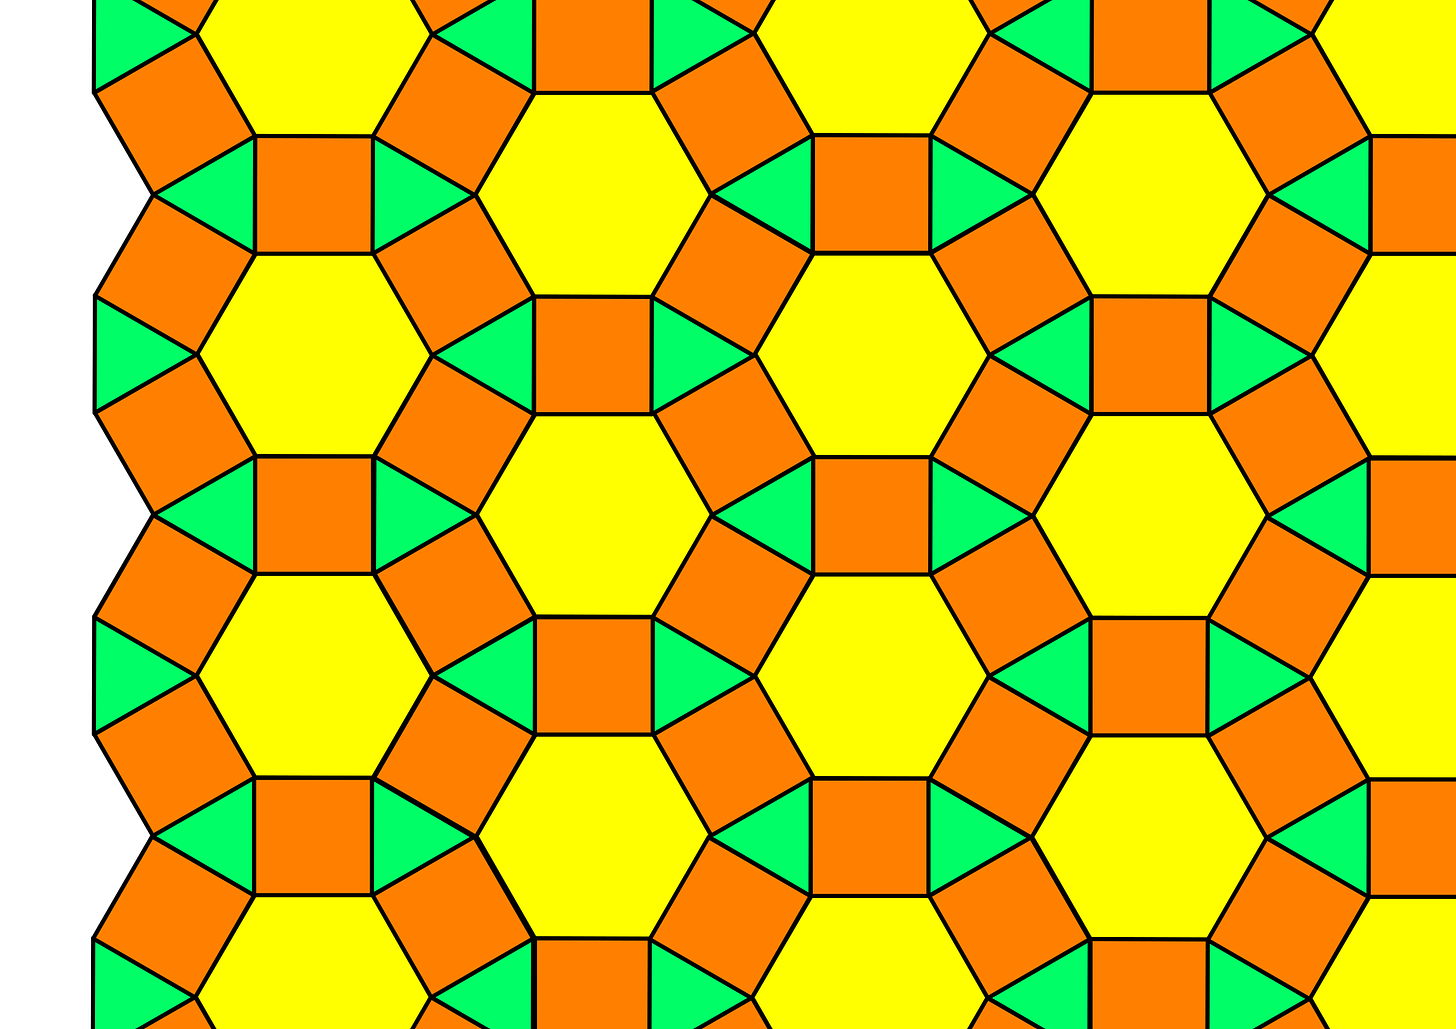 File:Semi-regular 3.4.6.4 tessellation.svg - Wikimedia Commons